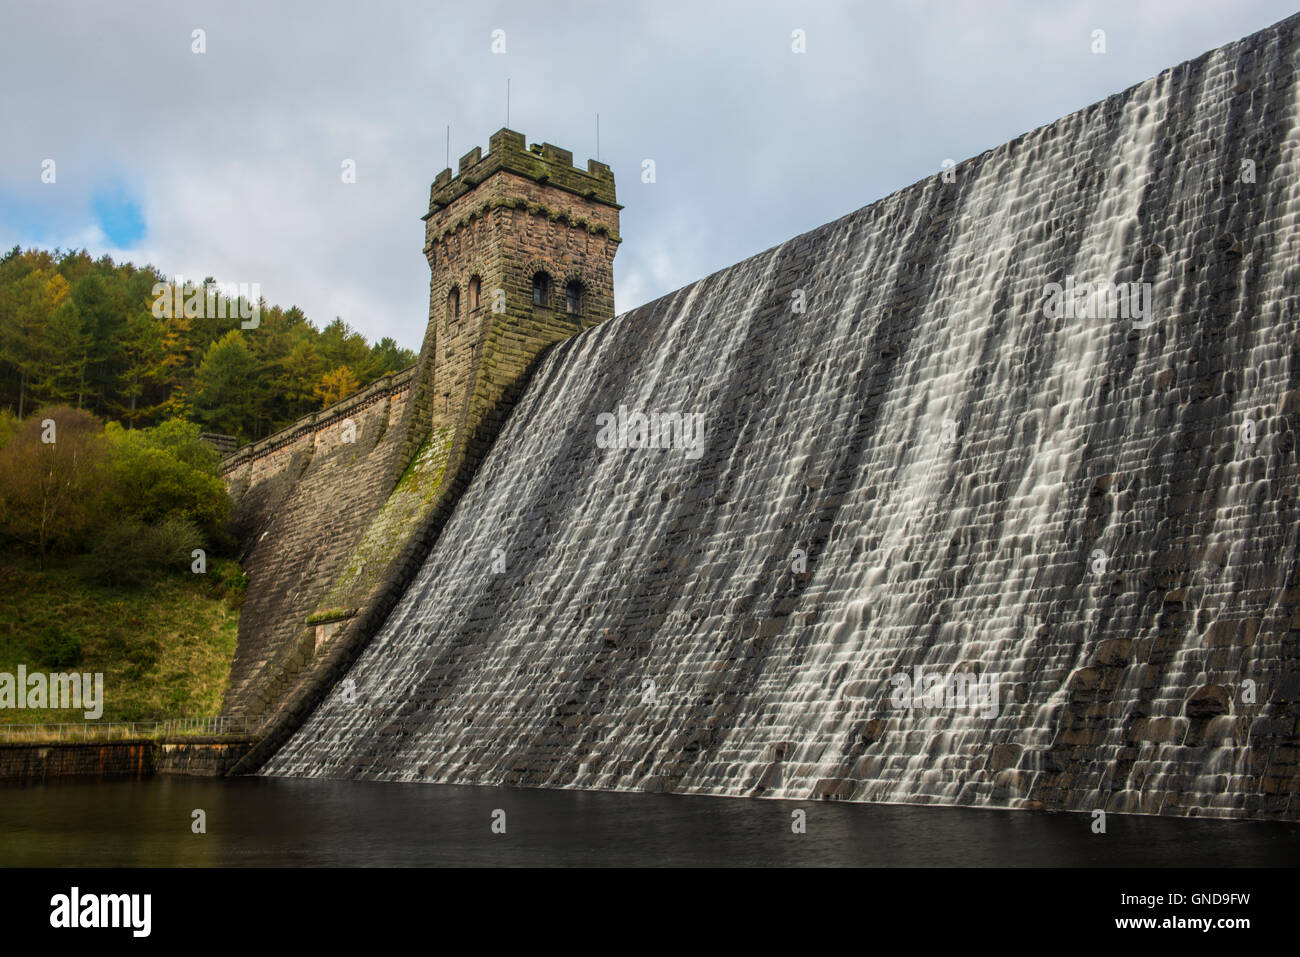 The Derwent dam in Derbyshire Stock Photo